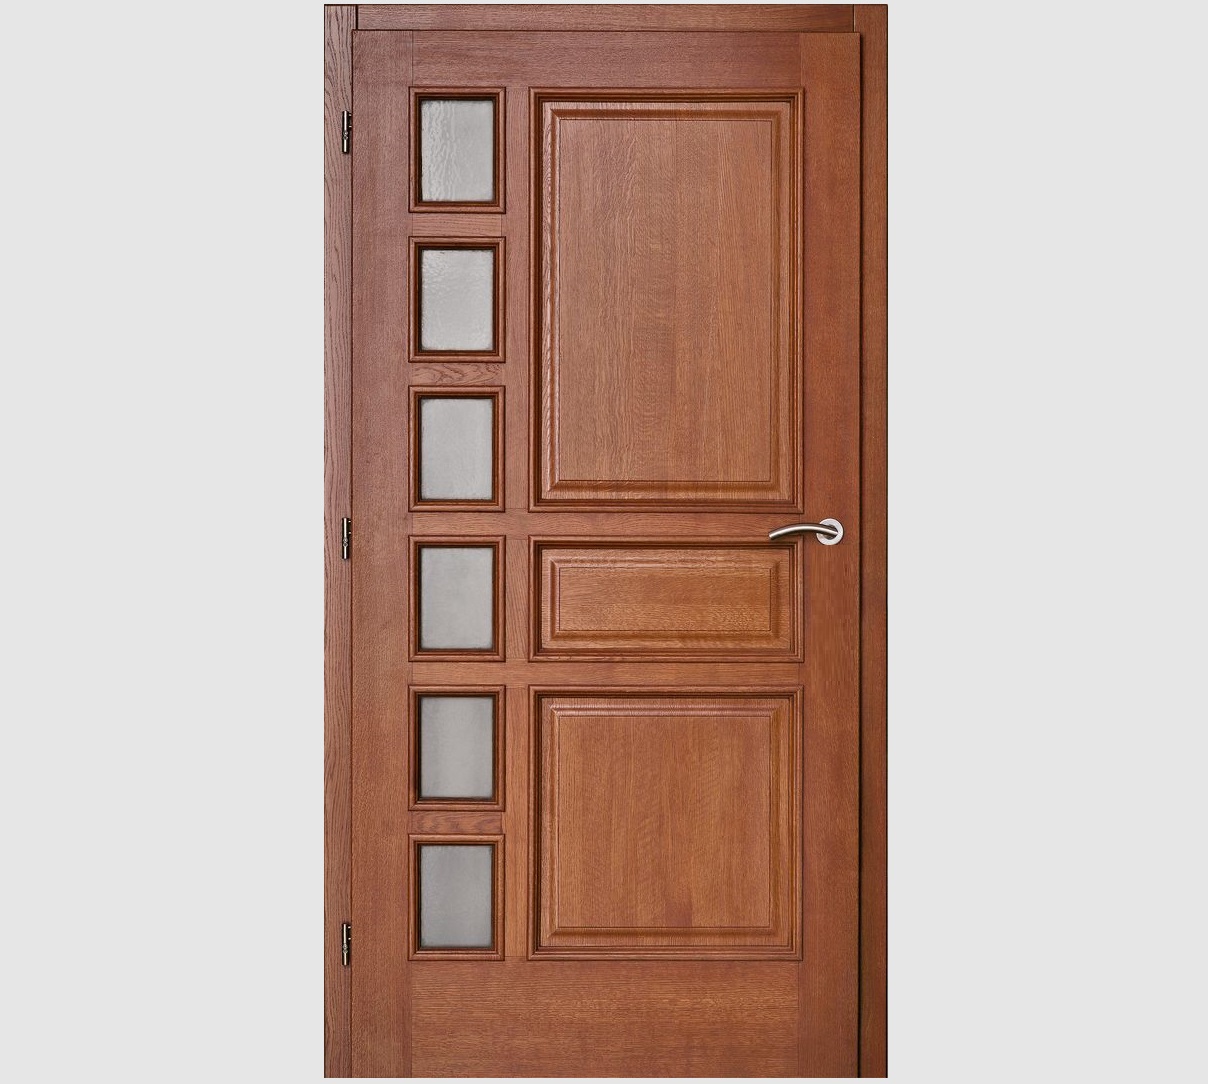 Beautiful Solid Wood Panel Door Design